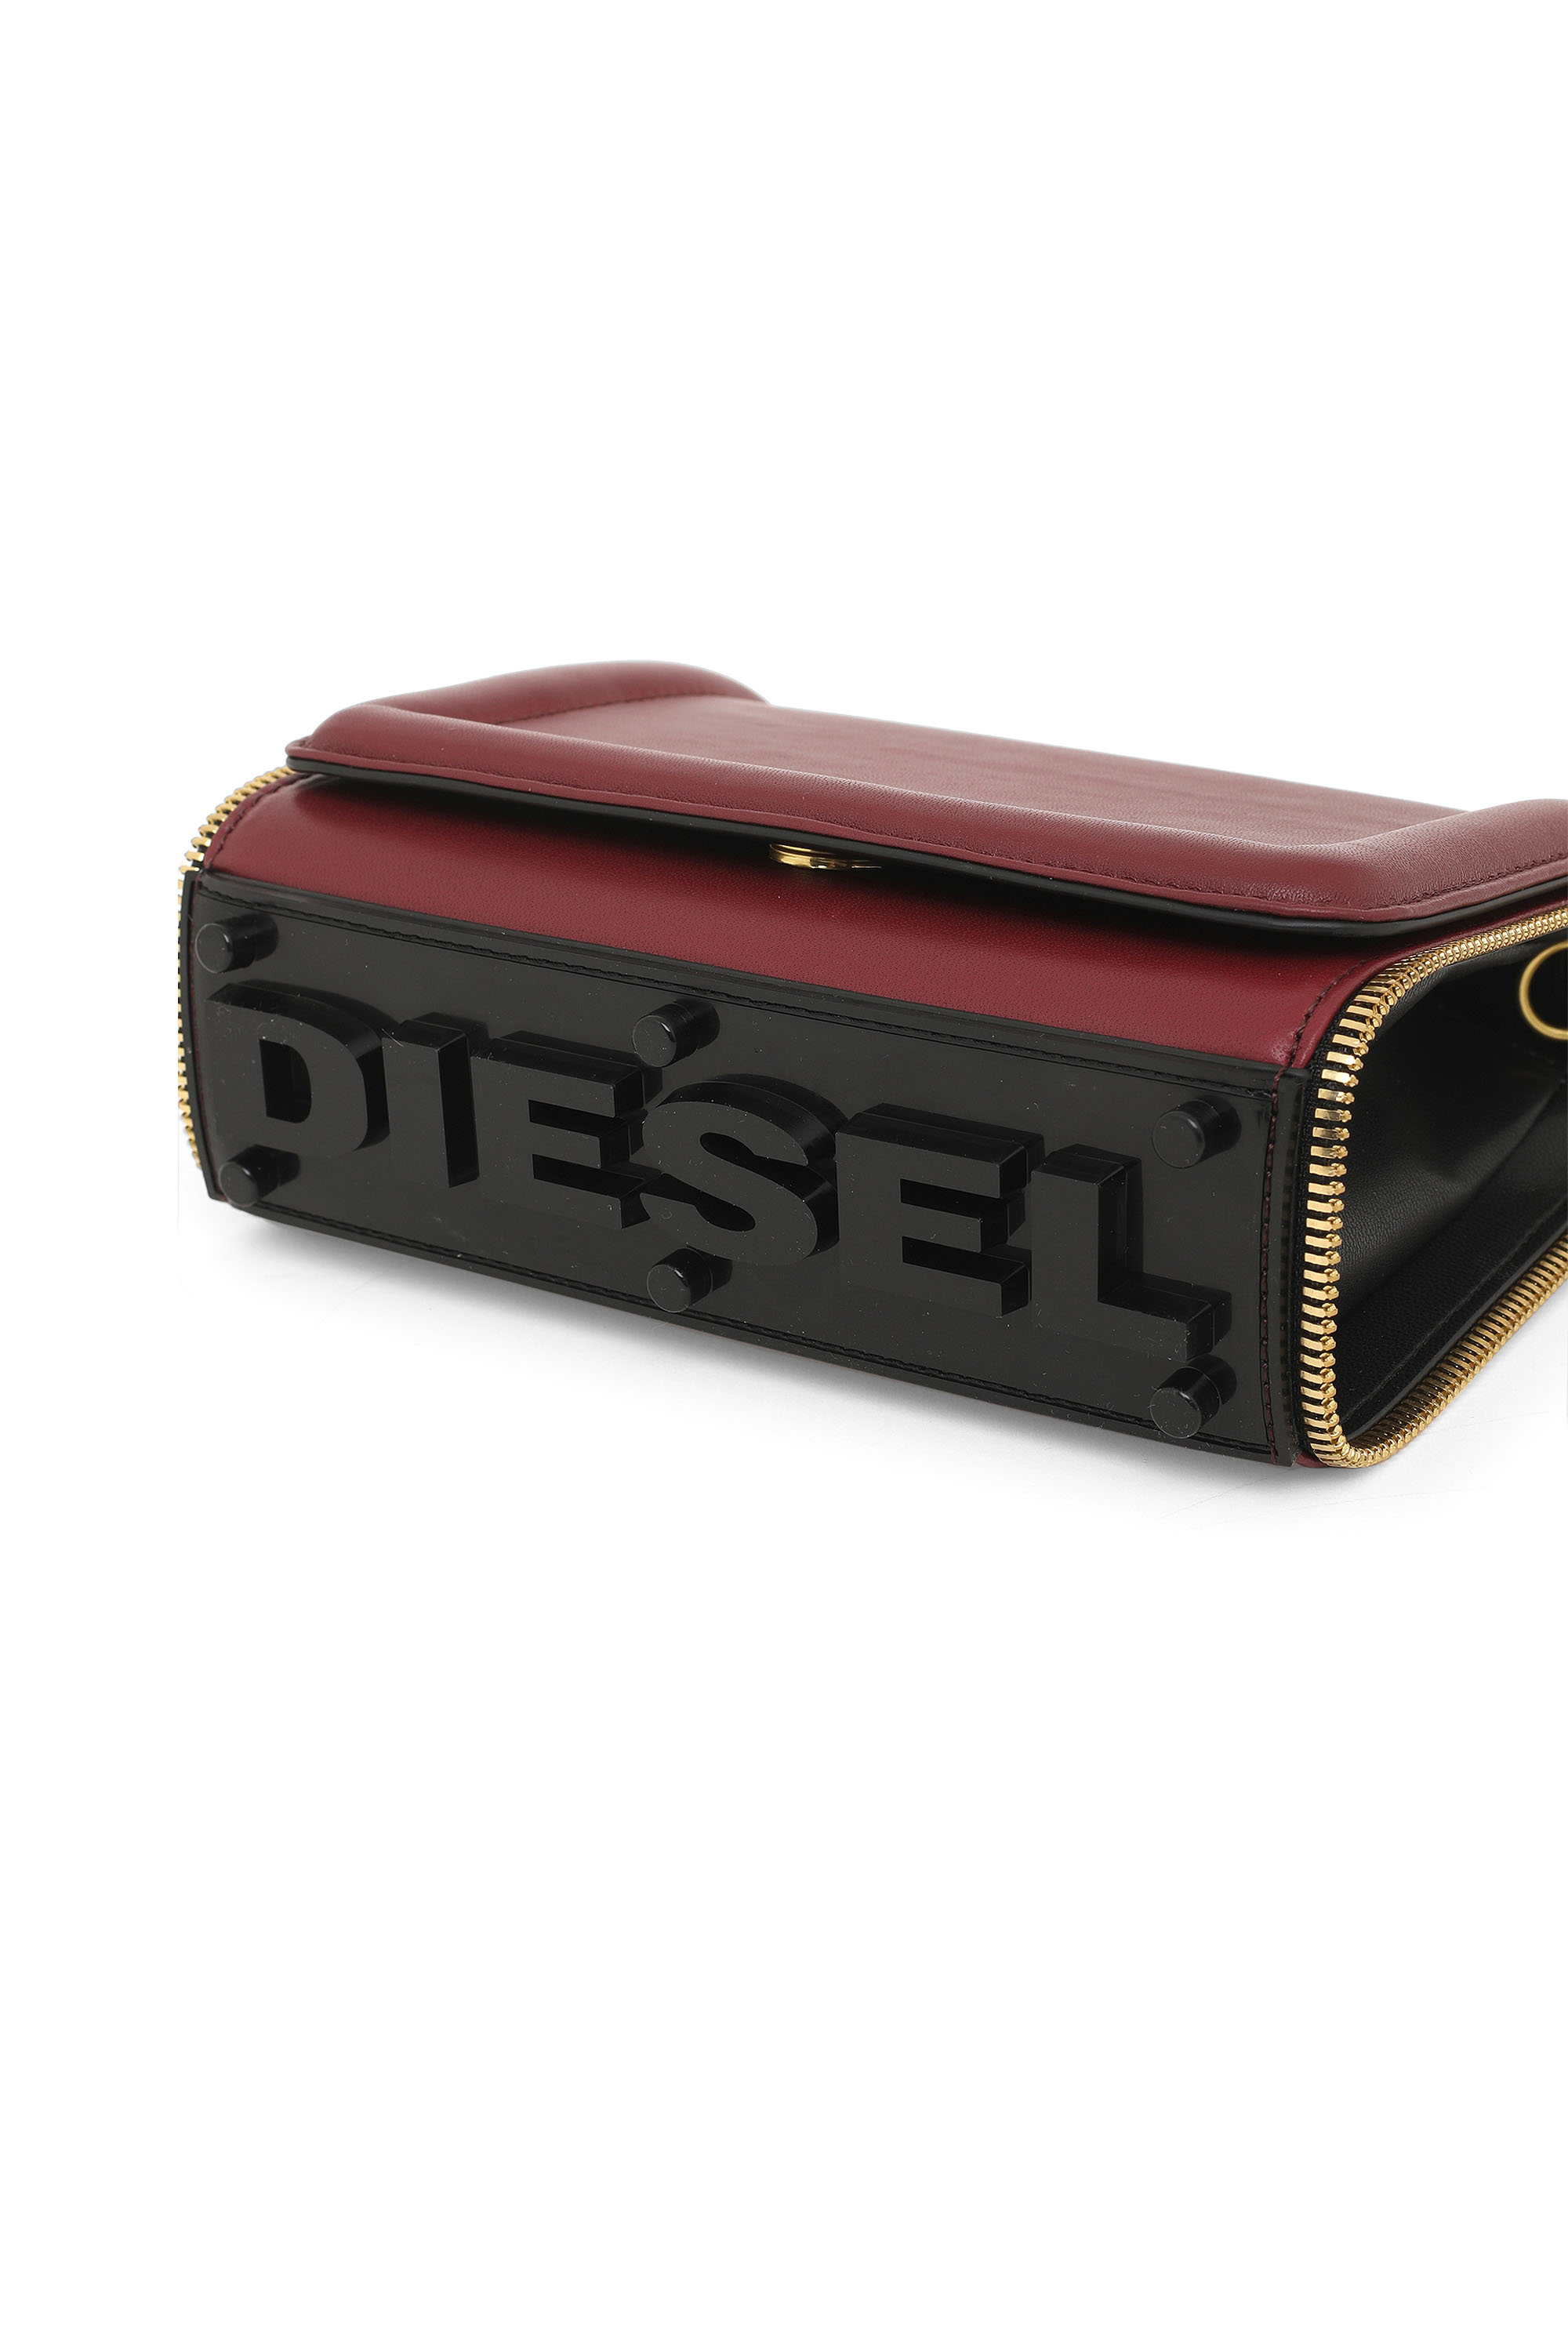 Diesel - YBYS S, Burdeos - Image 7